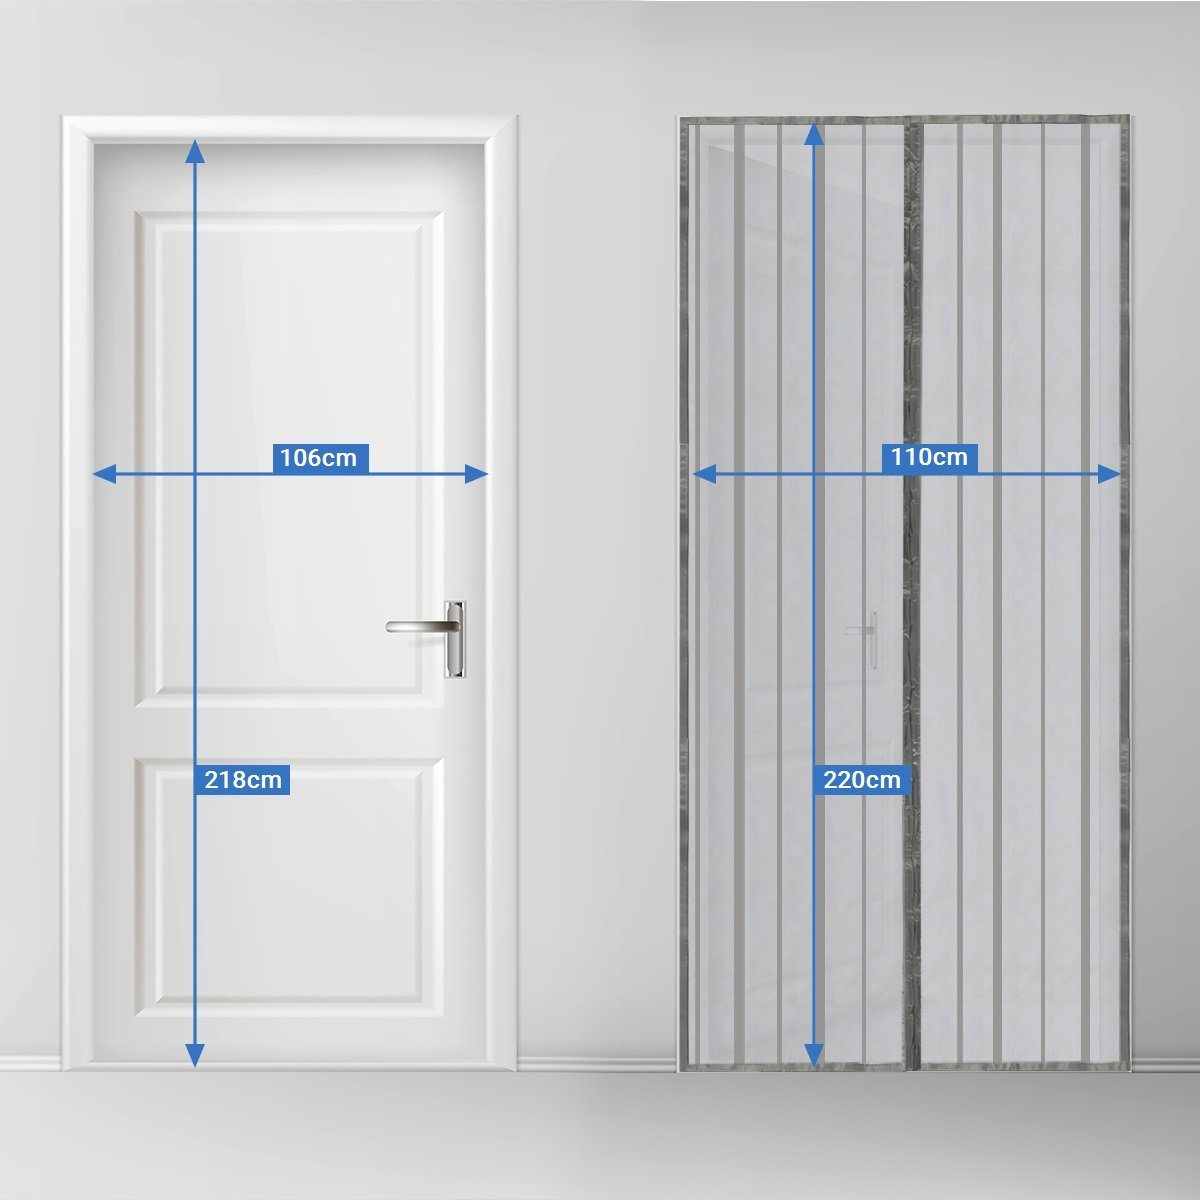 Sekey Insektenschutz-Tür Magnet Fliegengitter Tür Kellertür Balkontür Terrassentür Bohren, für ohne Magnetvorhang